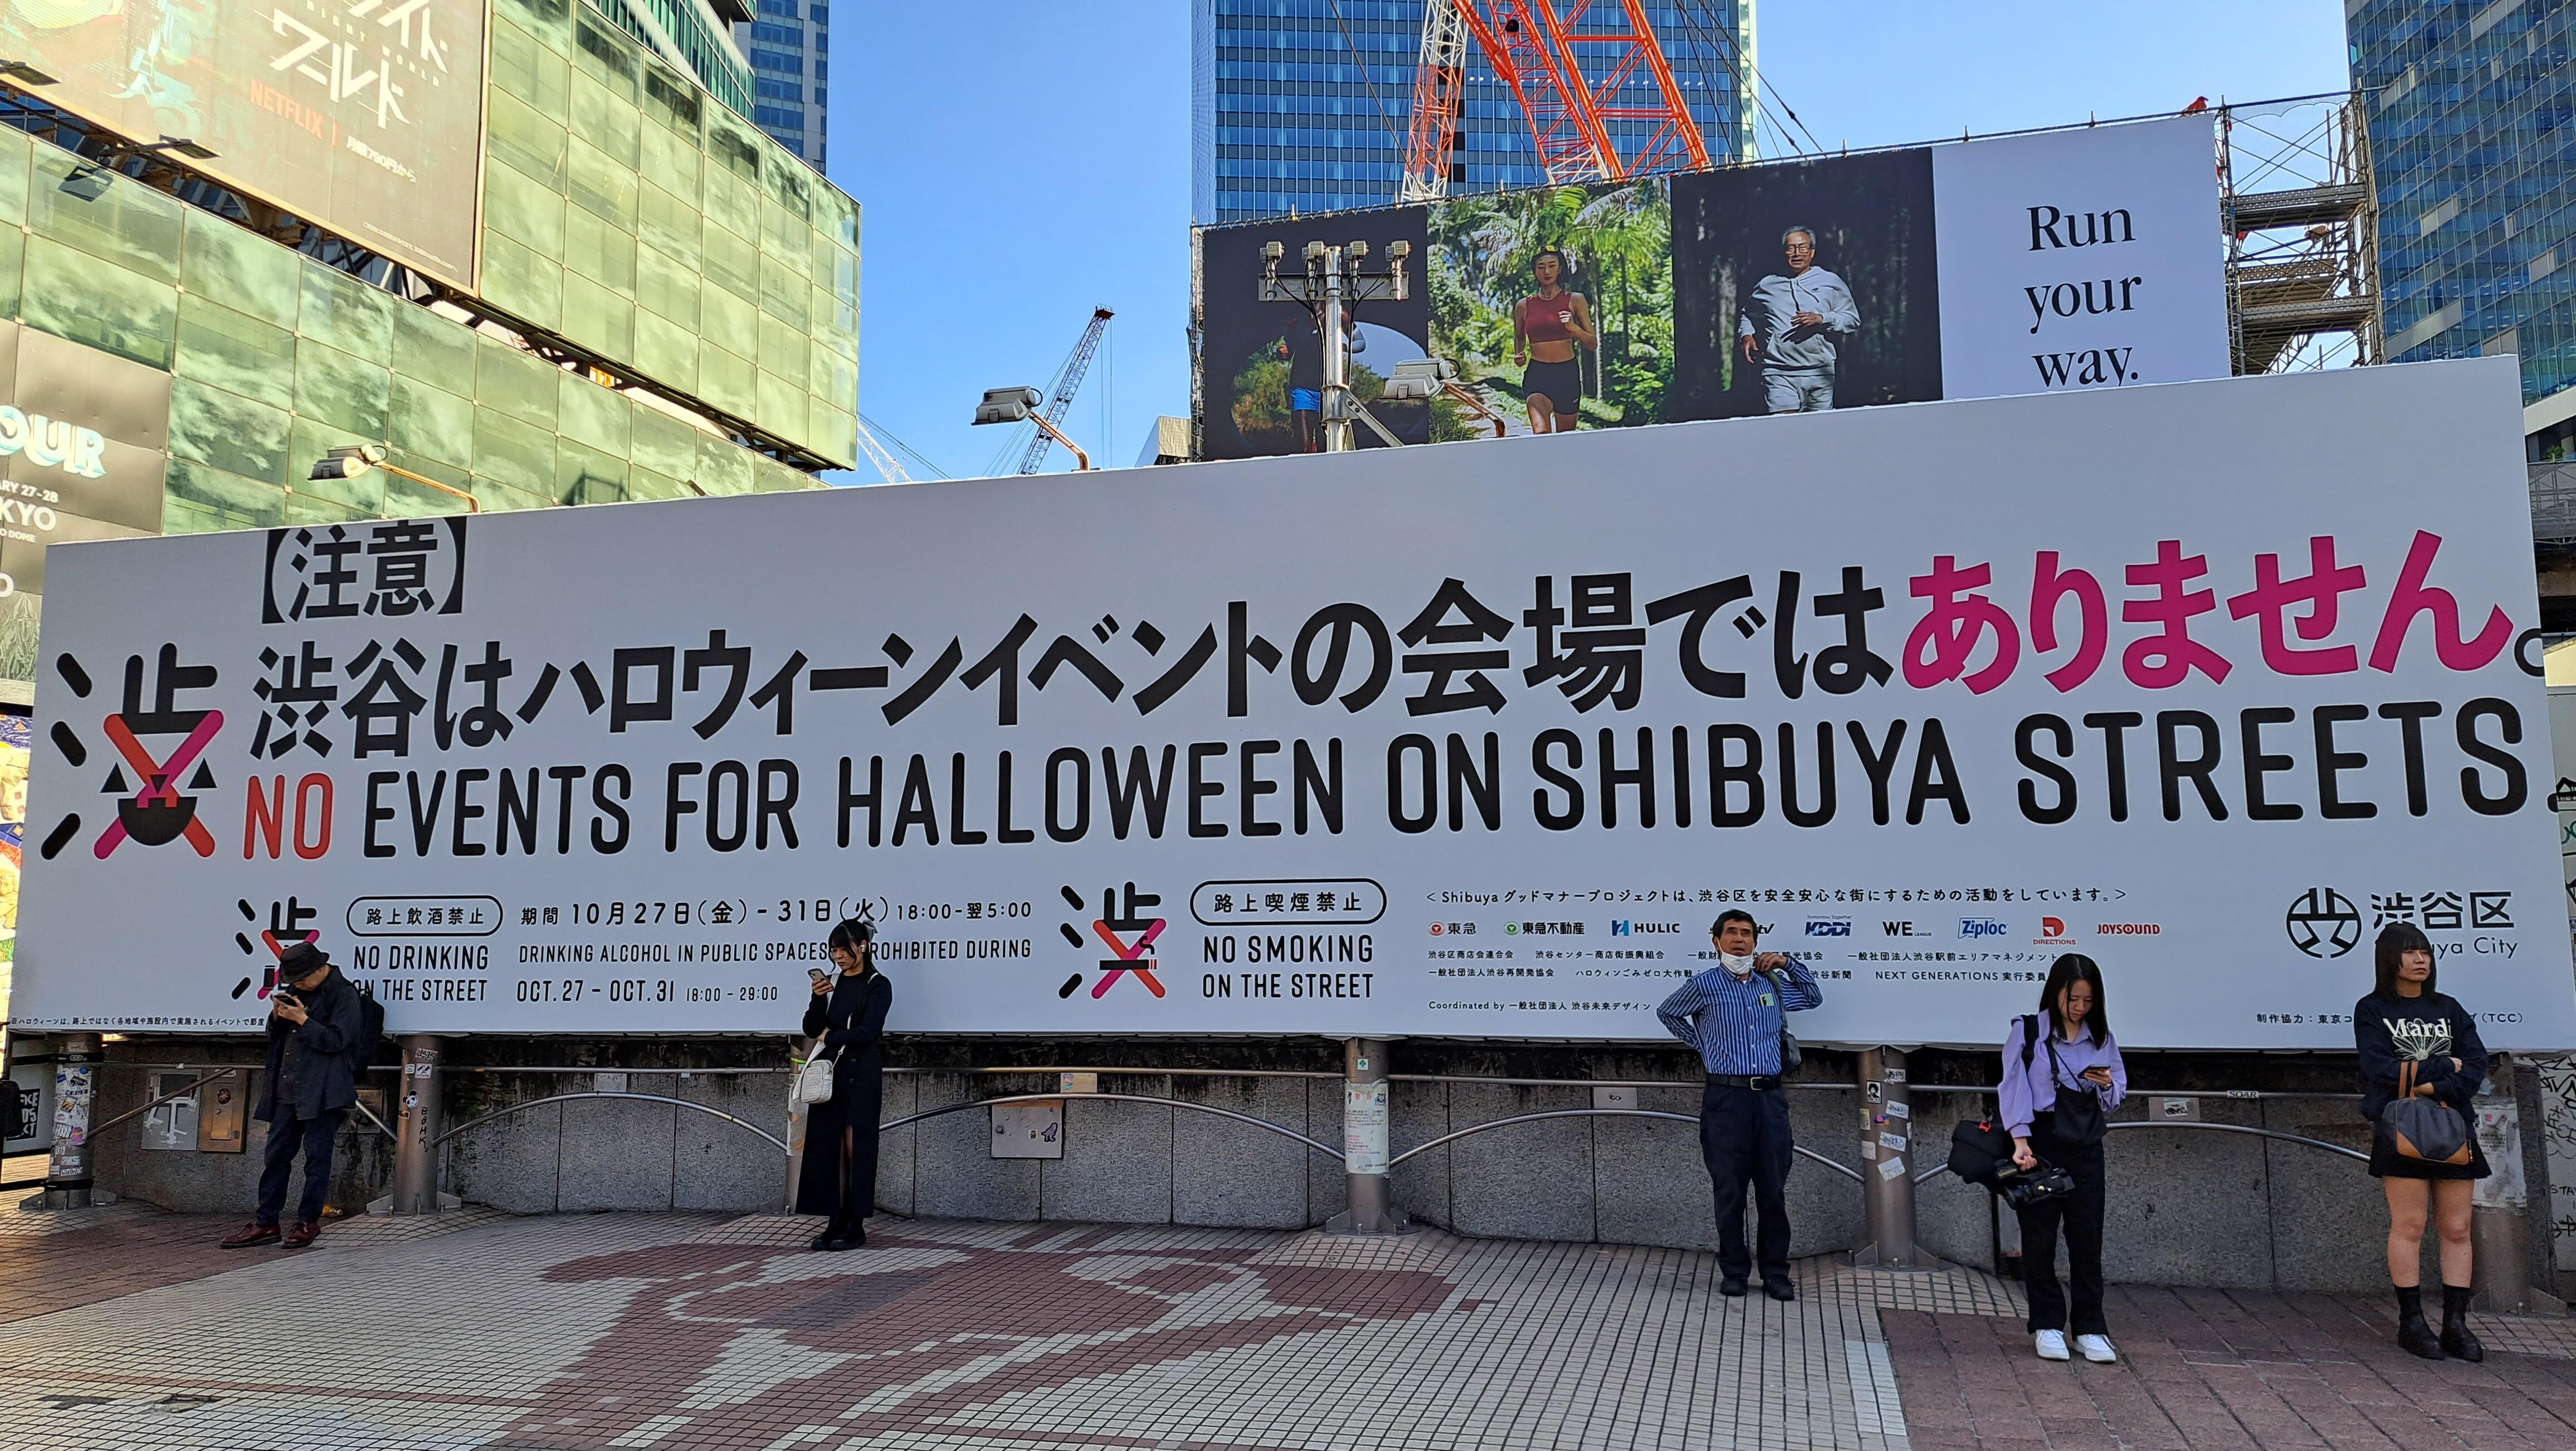 「【注意】渋谷はハロウィーン会場ではありません」巨大看板が話題に　区の本気すぎる対応、背景に「例年以上のリスク」